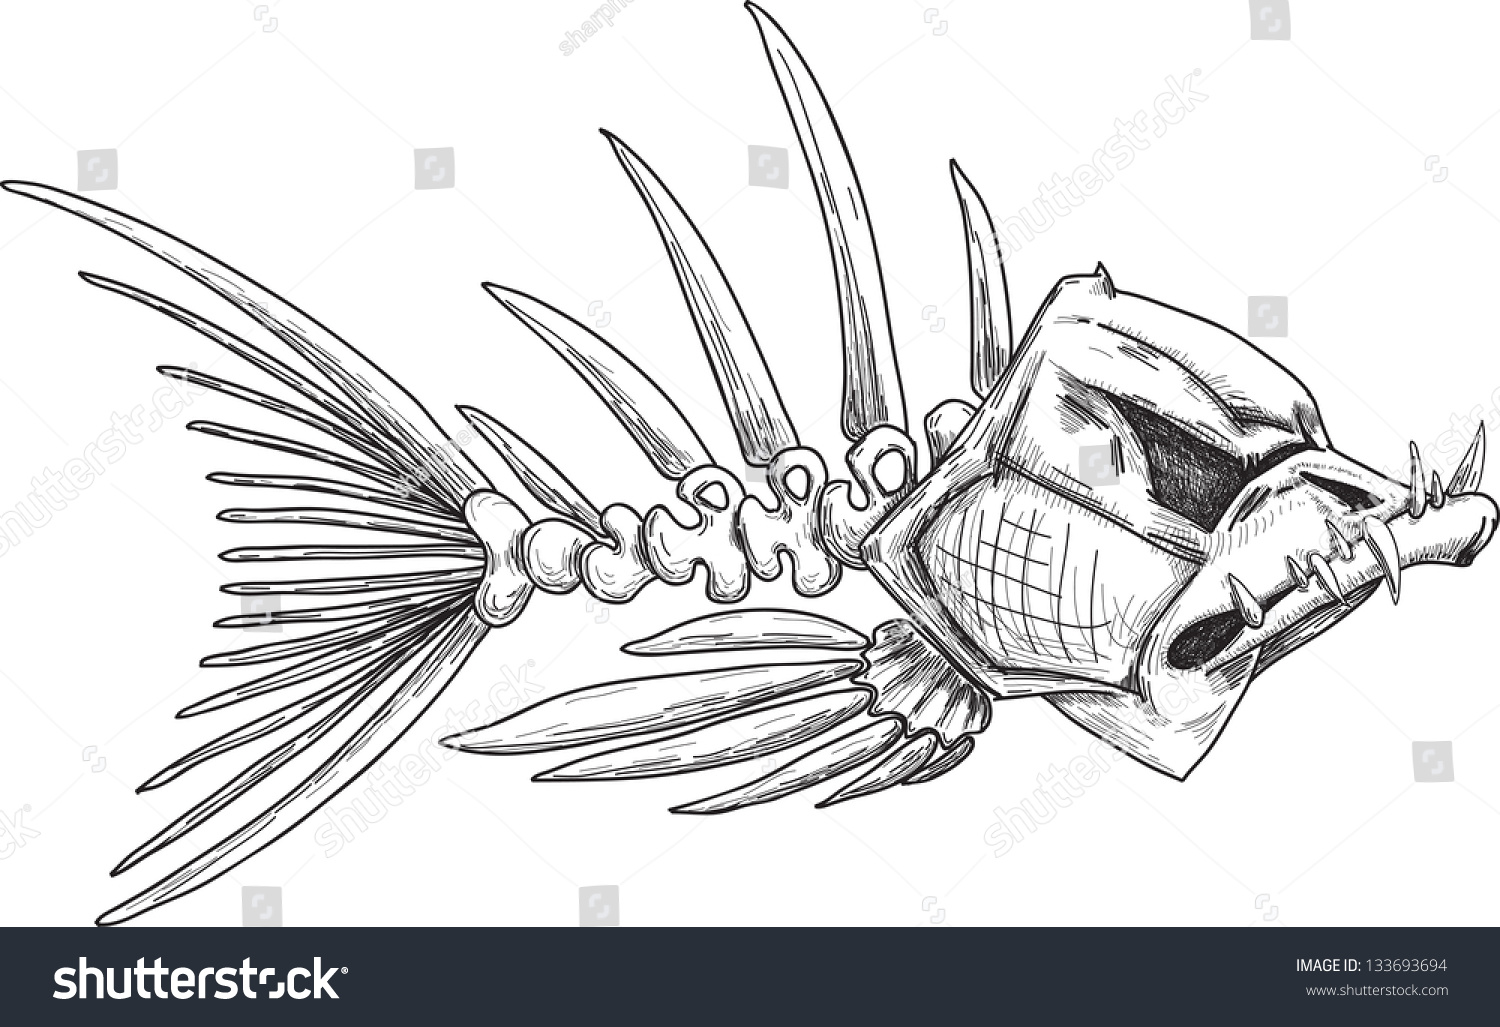 素描邪恶的鱼骨架与锋利弯曲的牙齿-动物\/野生